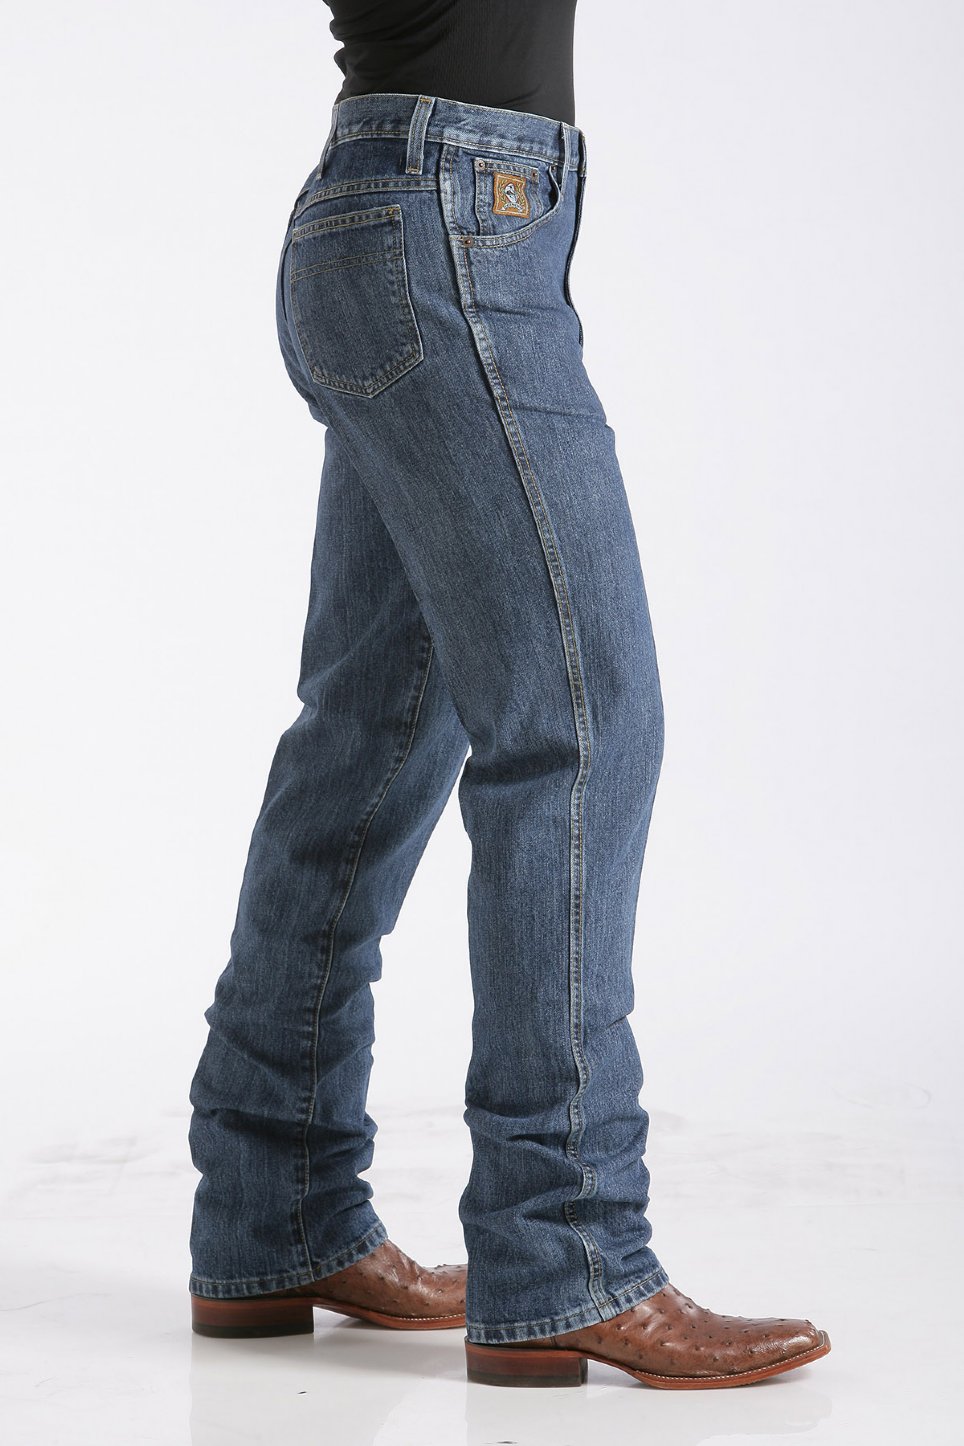 jeans équitation western homme cinch pour homme modèle bronze label